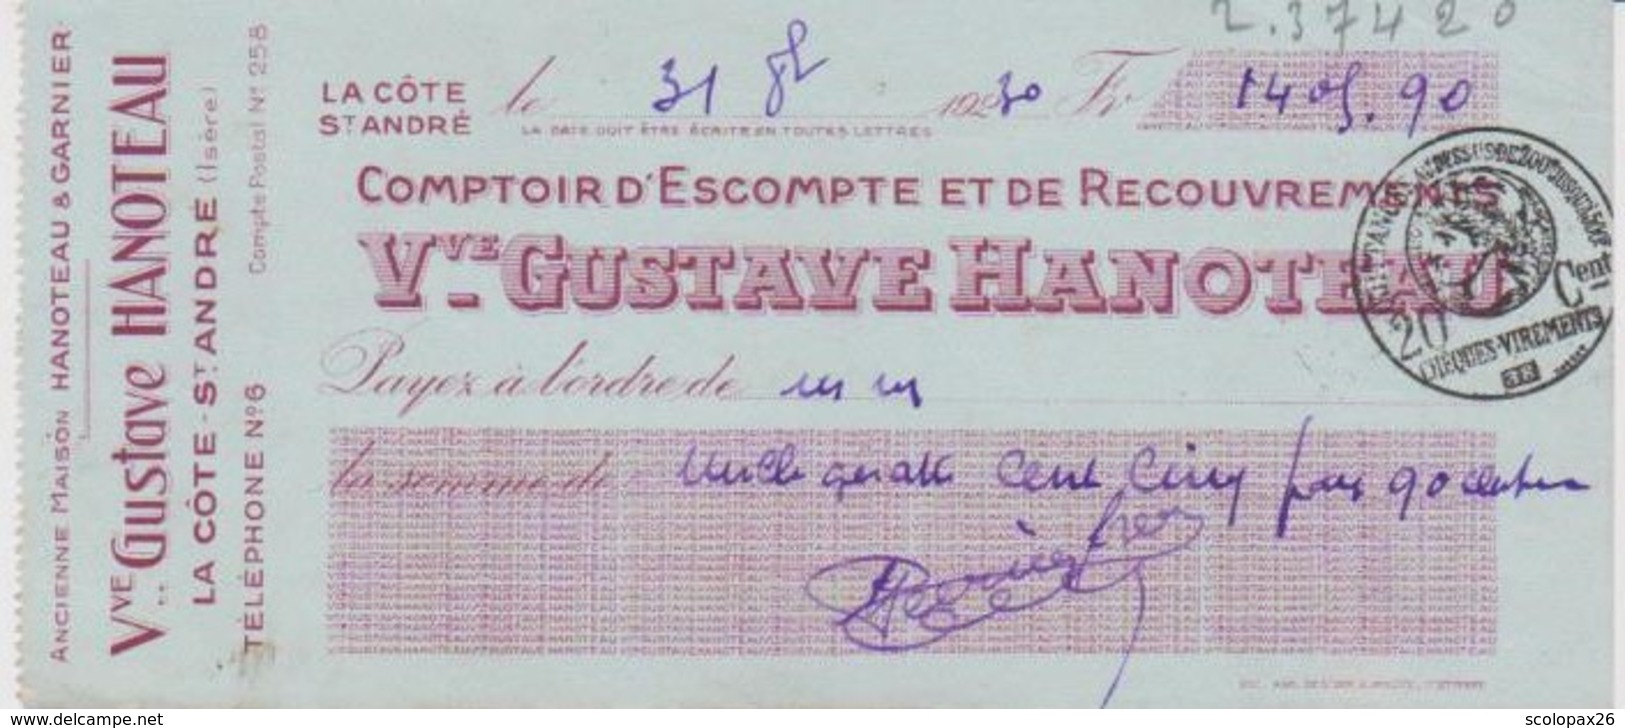 Chèque Banque Gustave Hanoteau La Côte Saint André (Isère) De 1930 Cachet Quittance 20 Cts - Cheques & Traveler's Cheques